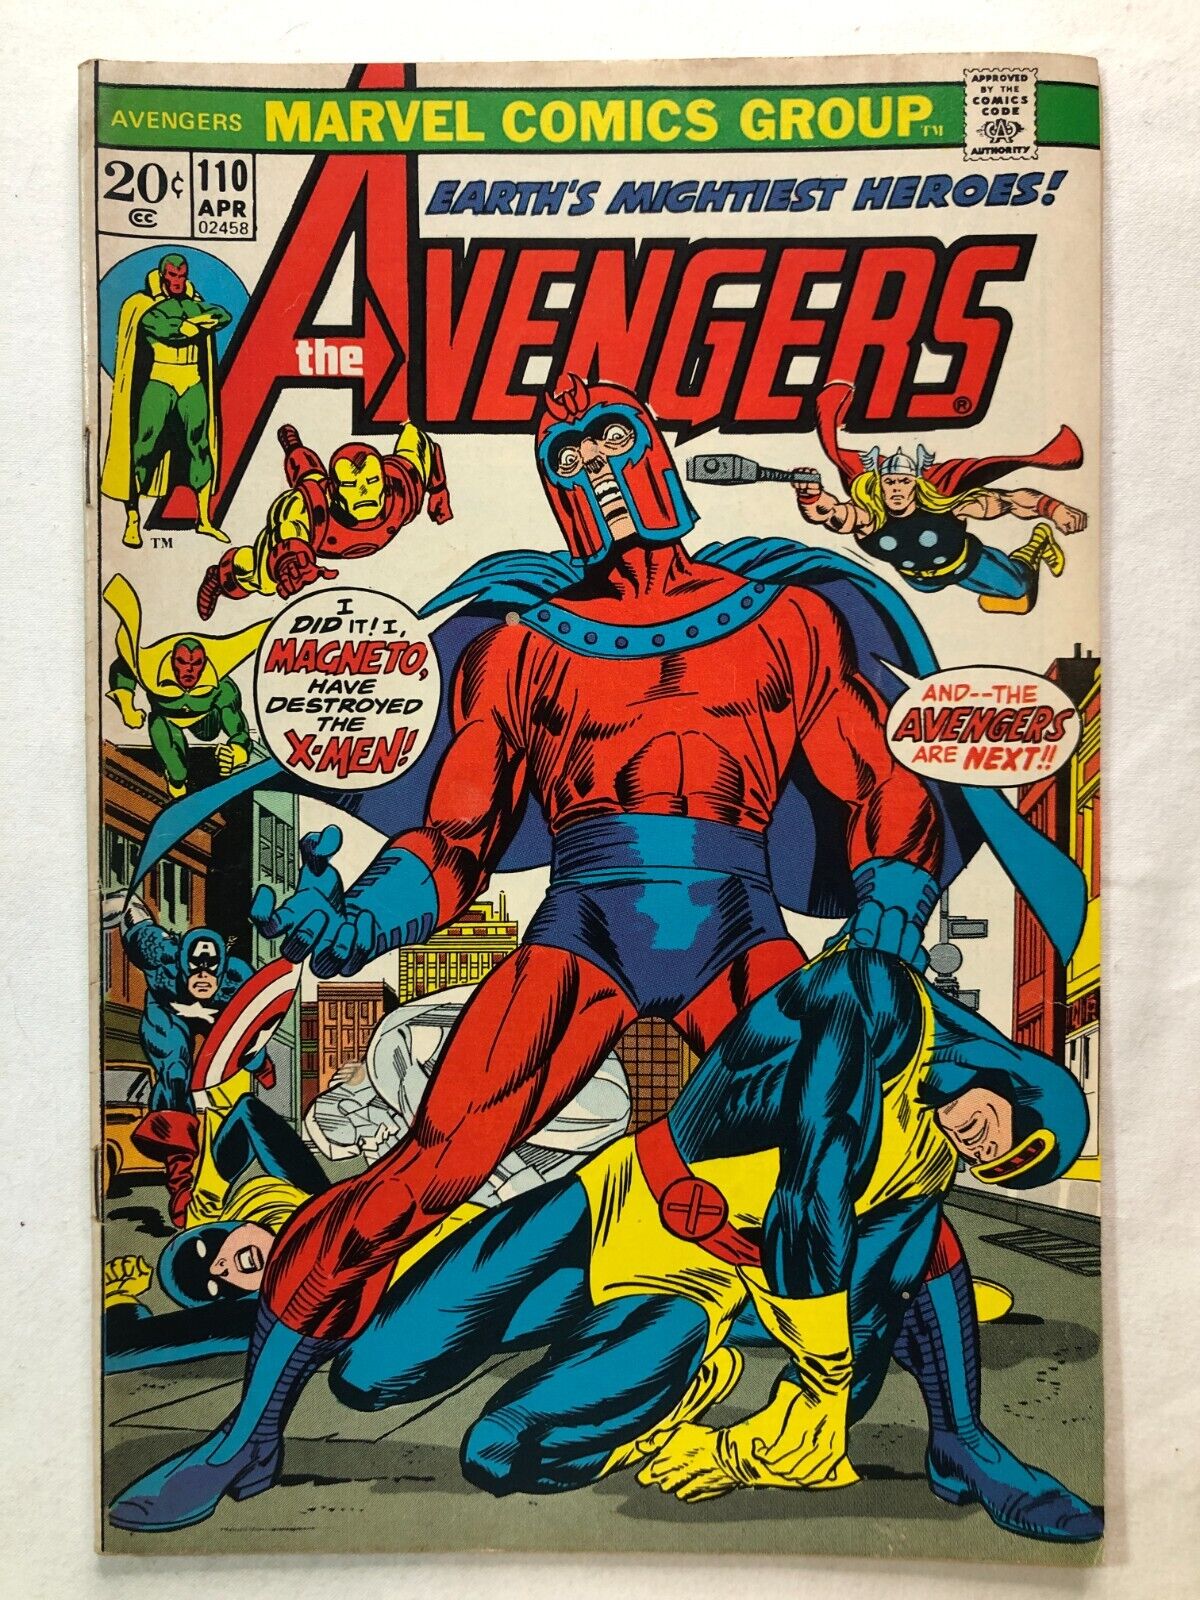 AVENGERS #110 April 1973 X-men & Magneto Vintage Marvel Comics Great Condition